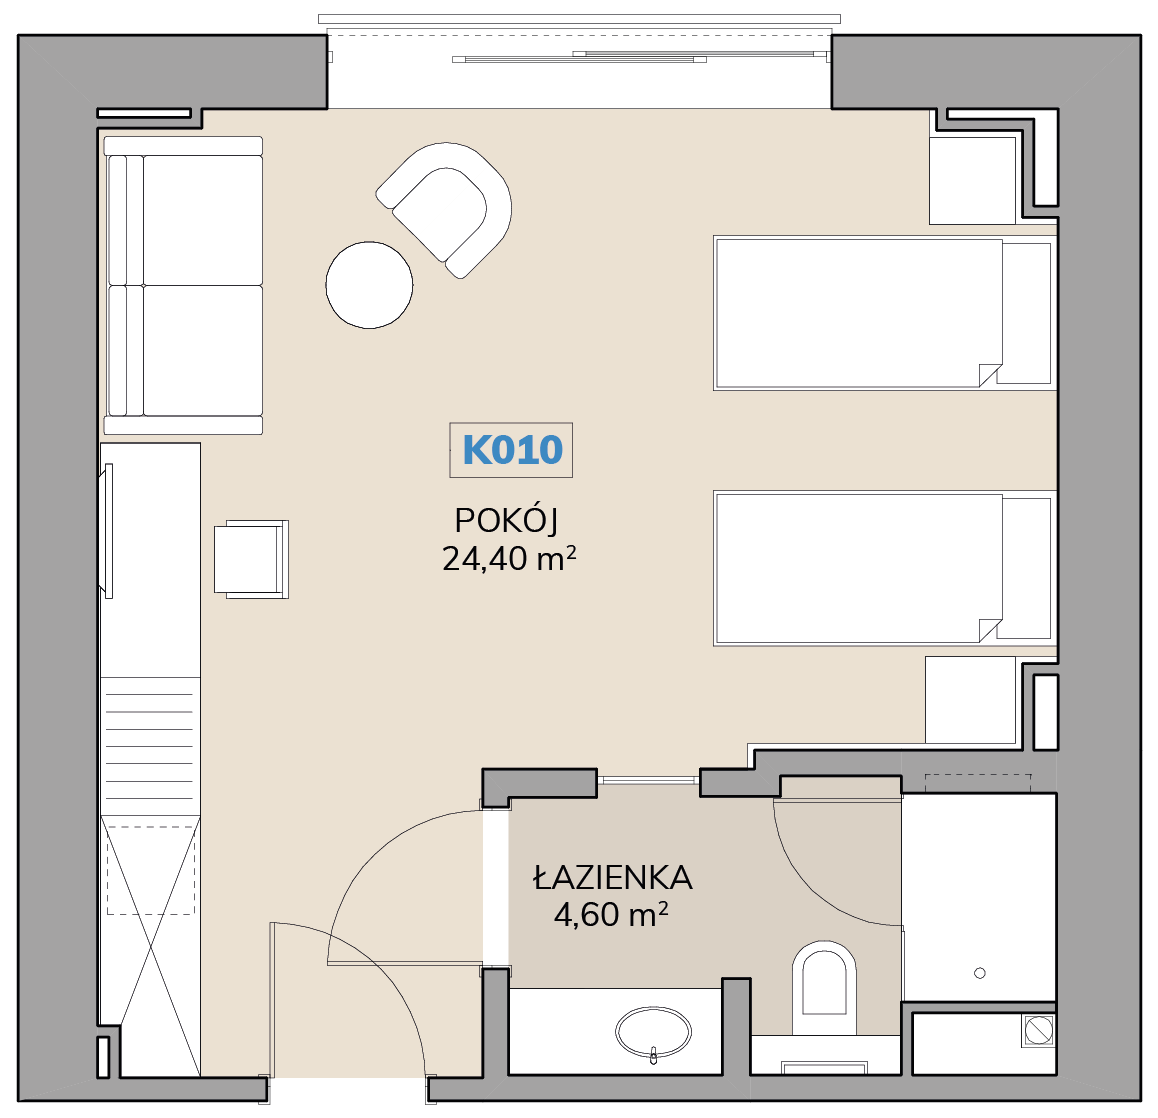 Apartament K010